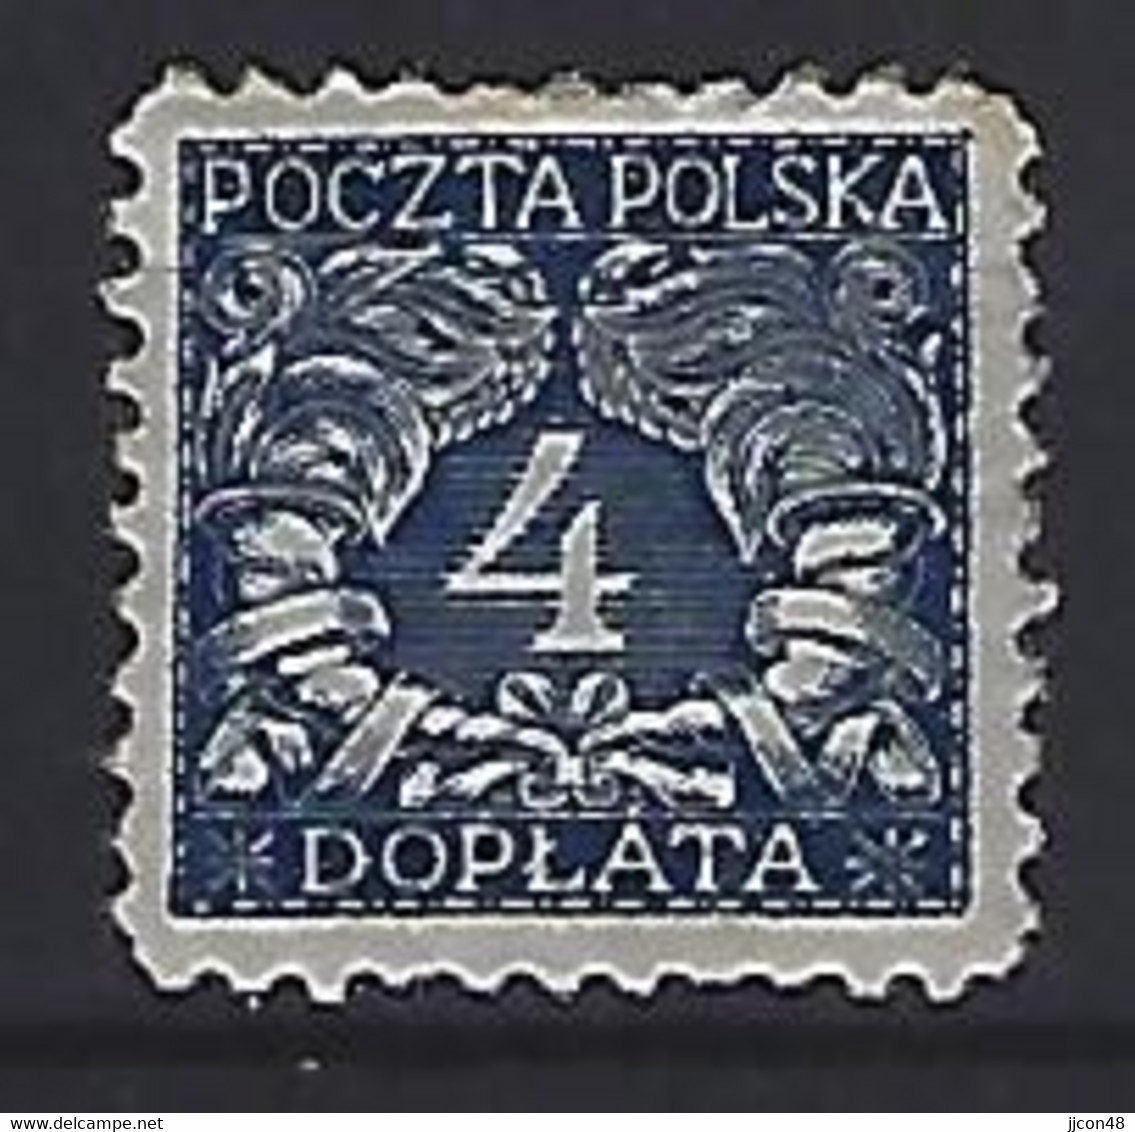 Poland 1919  Postage Due (*) MM  Mi.14 - Portomarken